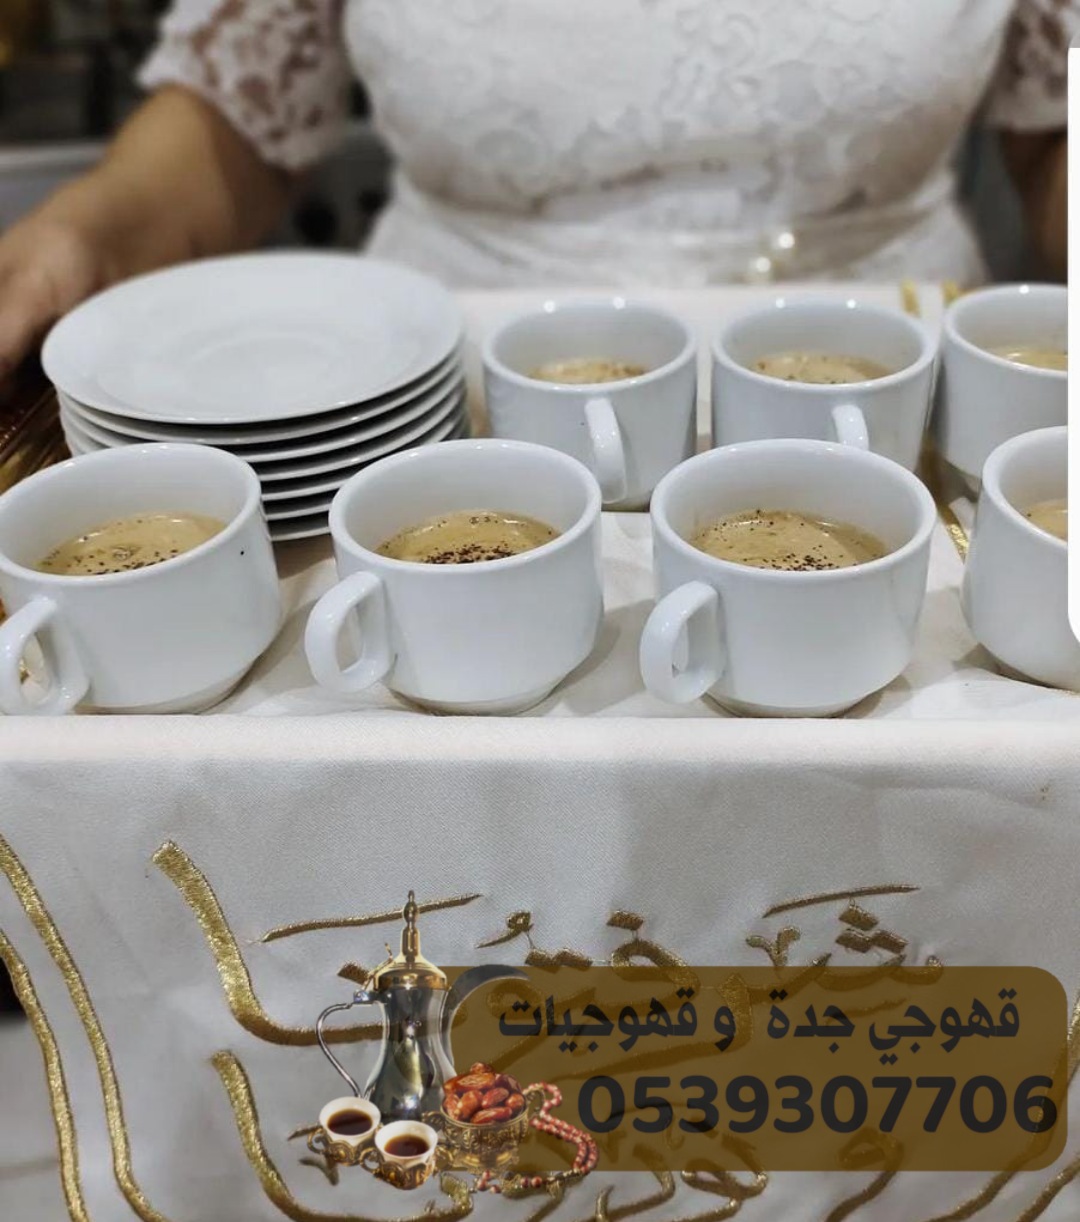 قهوجيات قهوه و قهوجي في جدة 0539307706 170800977869232